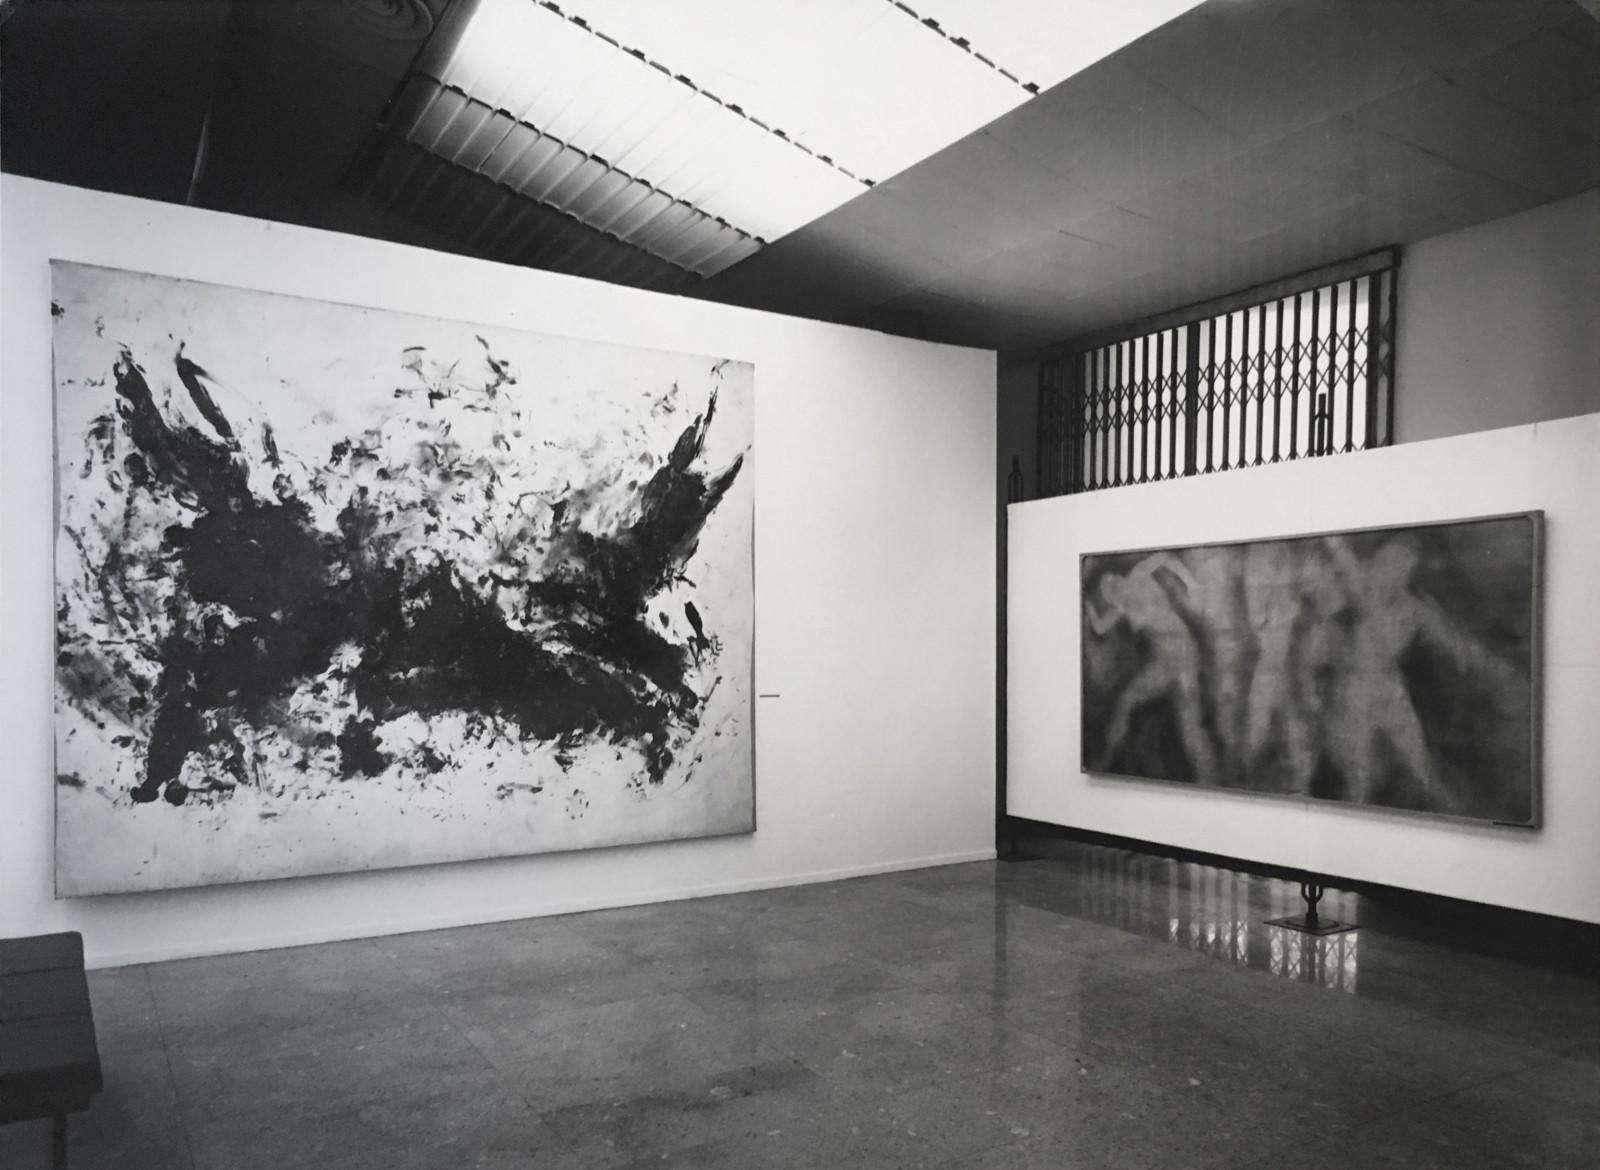 View of the exhibition, "Yves Klein", Galleria Civica d'Arte Moderna e Contemporanea, 1970